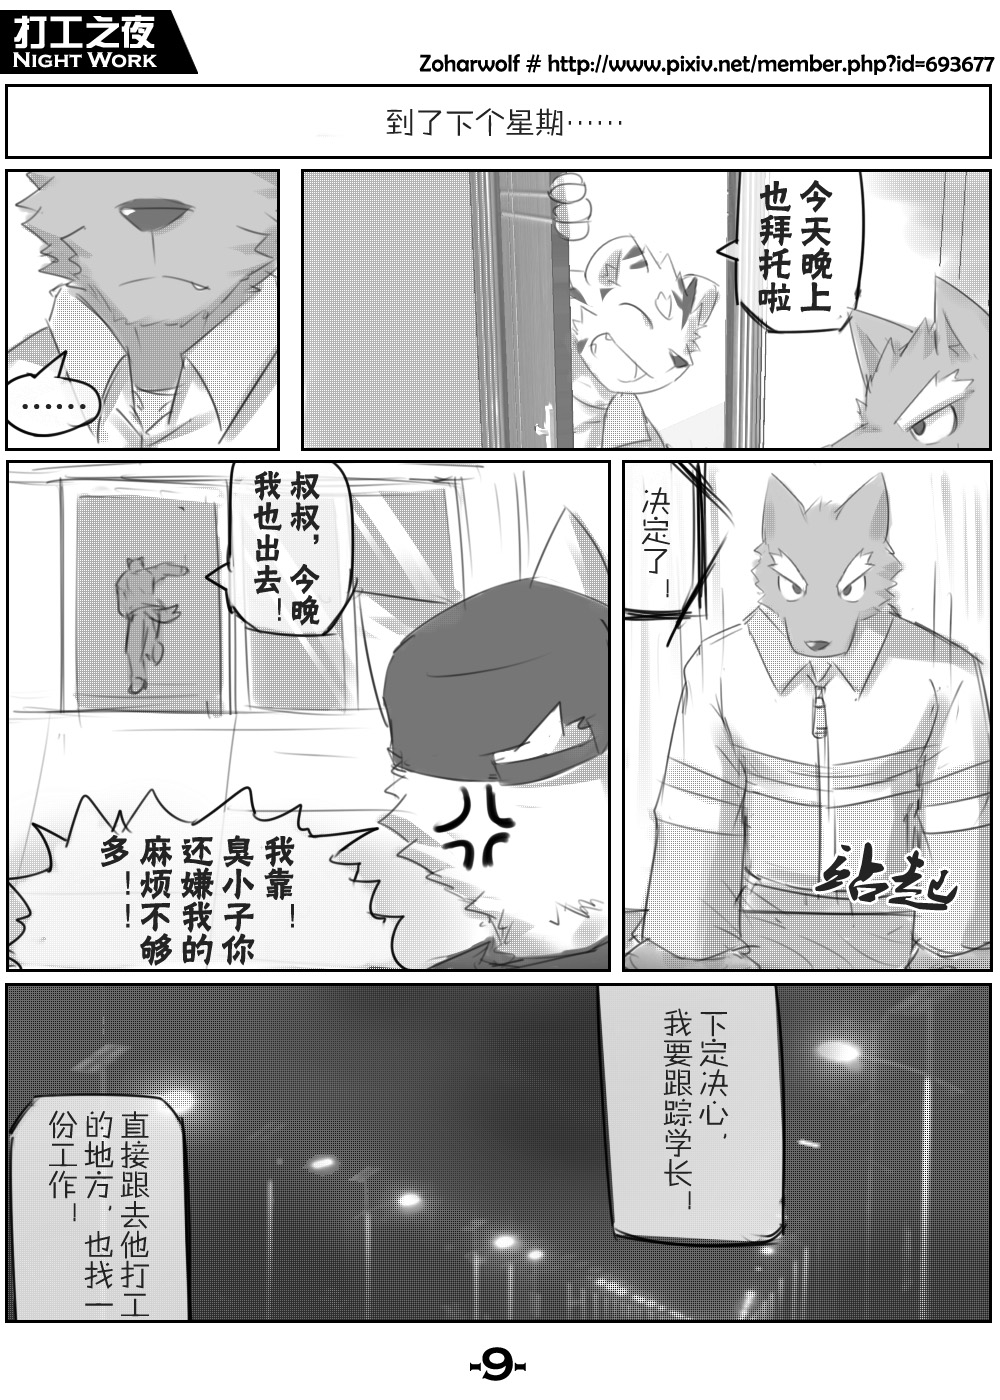 【漫画】打工之夜 [zoharwolf] 打工之夜 [中国語]